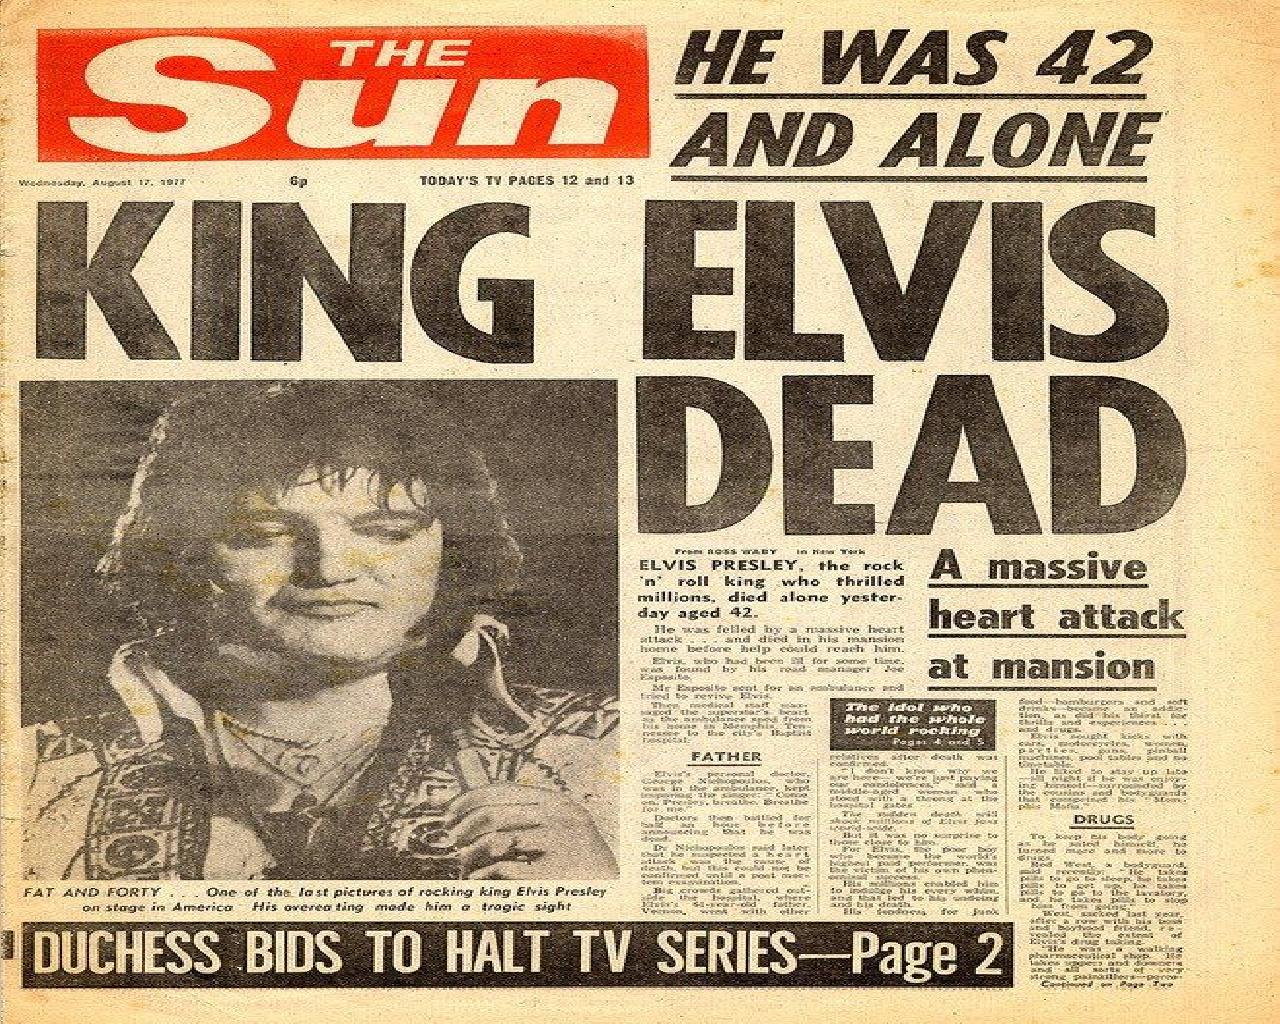 Elvis Presley Died at 42